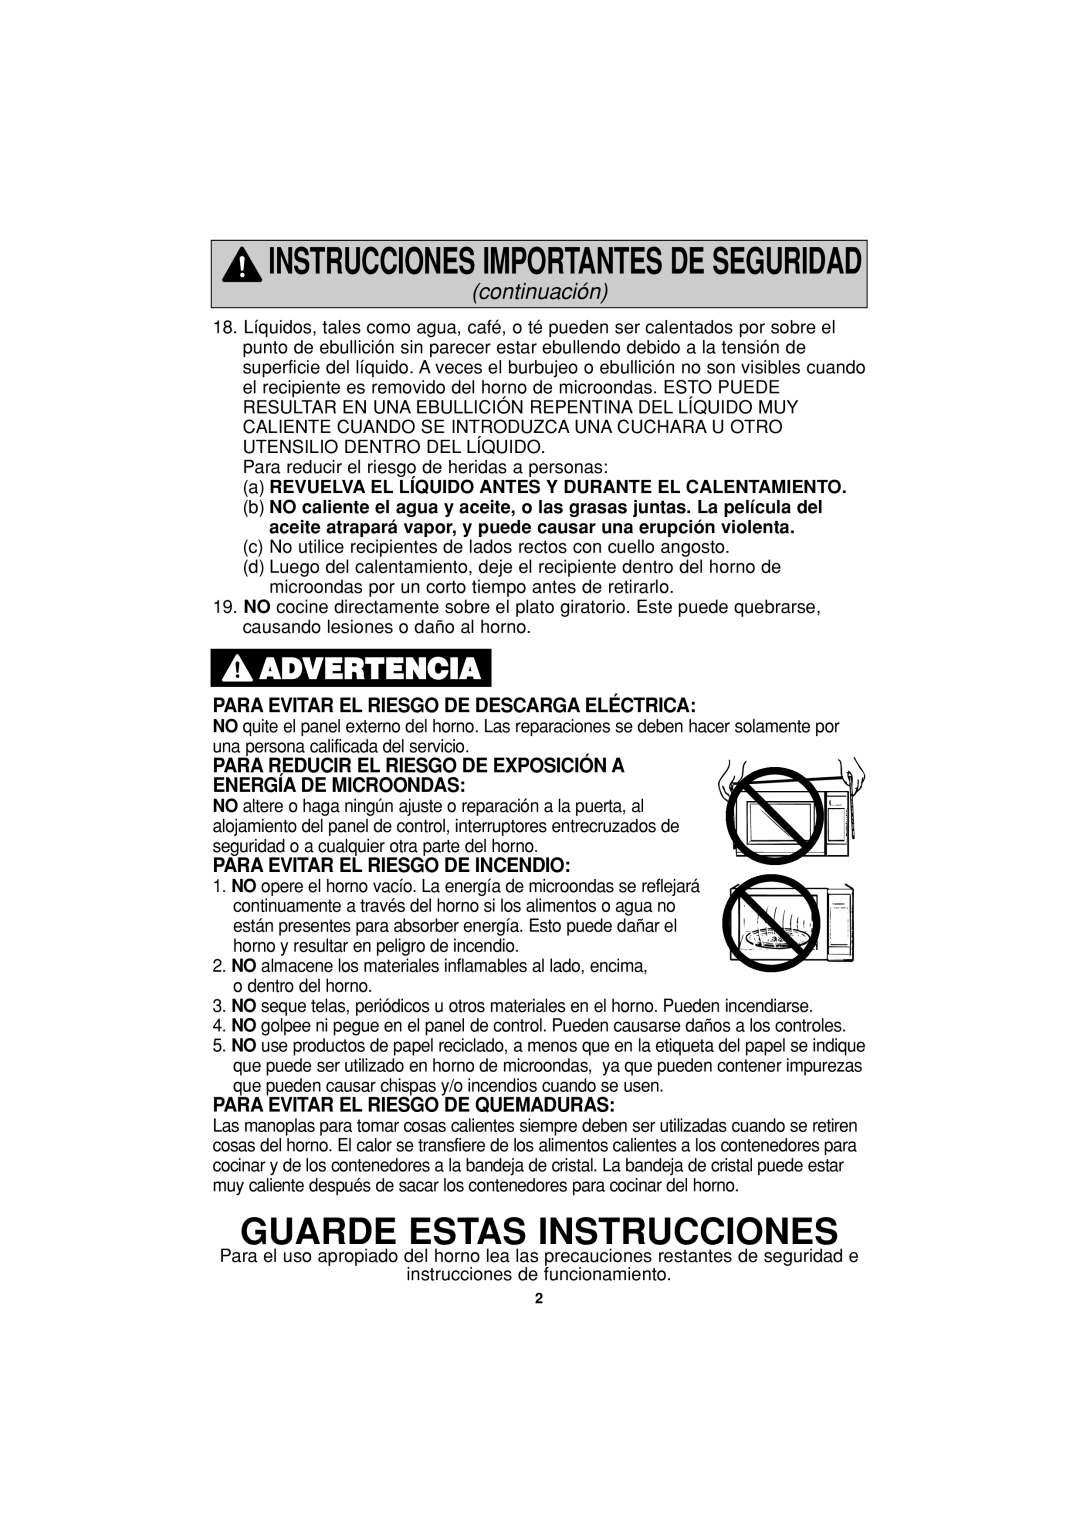 Panasonic NN-S334 Guarde Estas Instrucciones, Advertencia, Instrucciones Importantes De Seguridad, continuación 